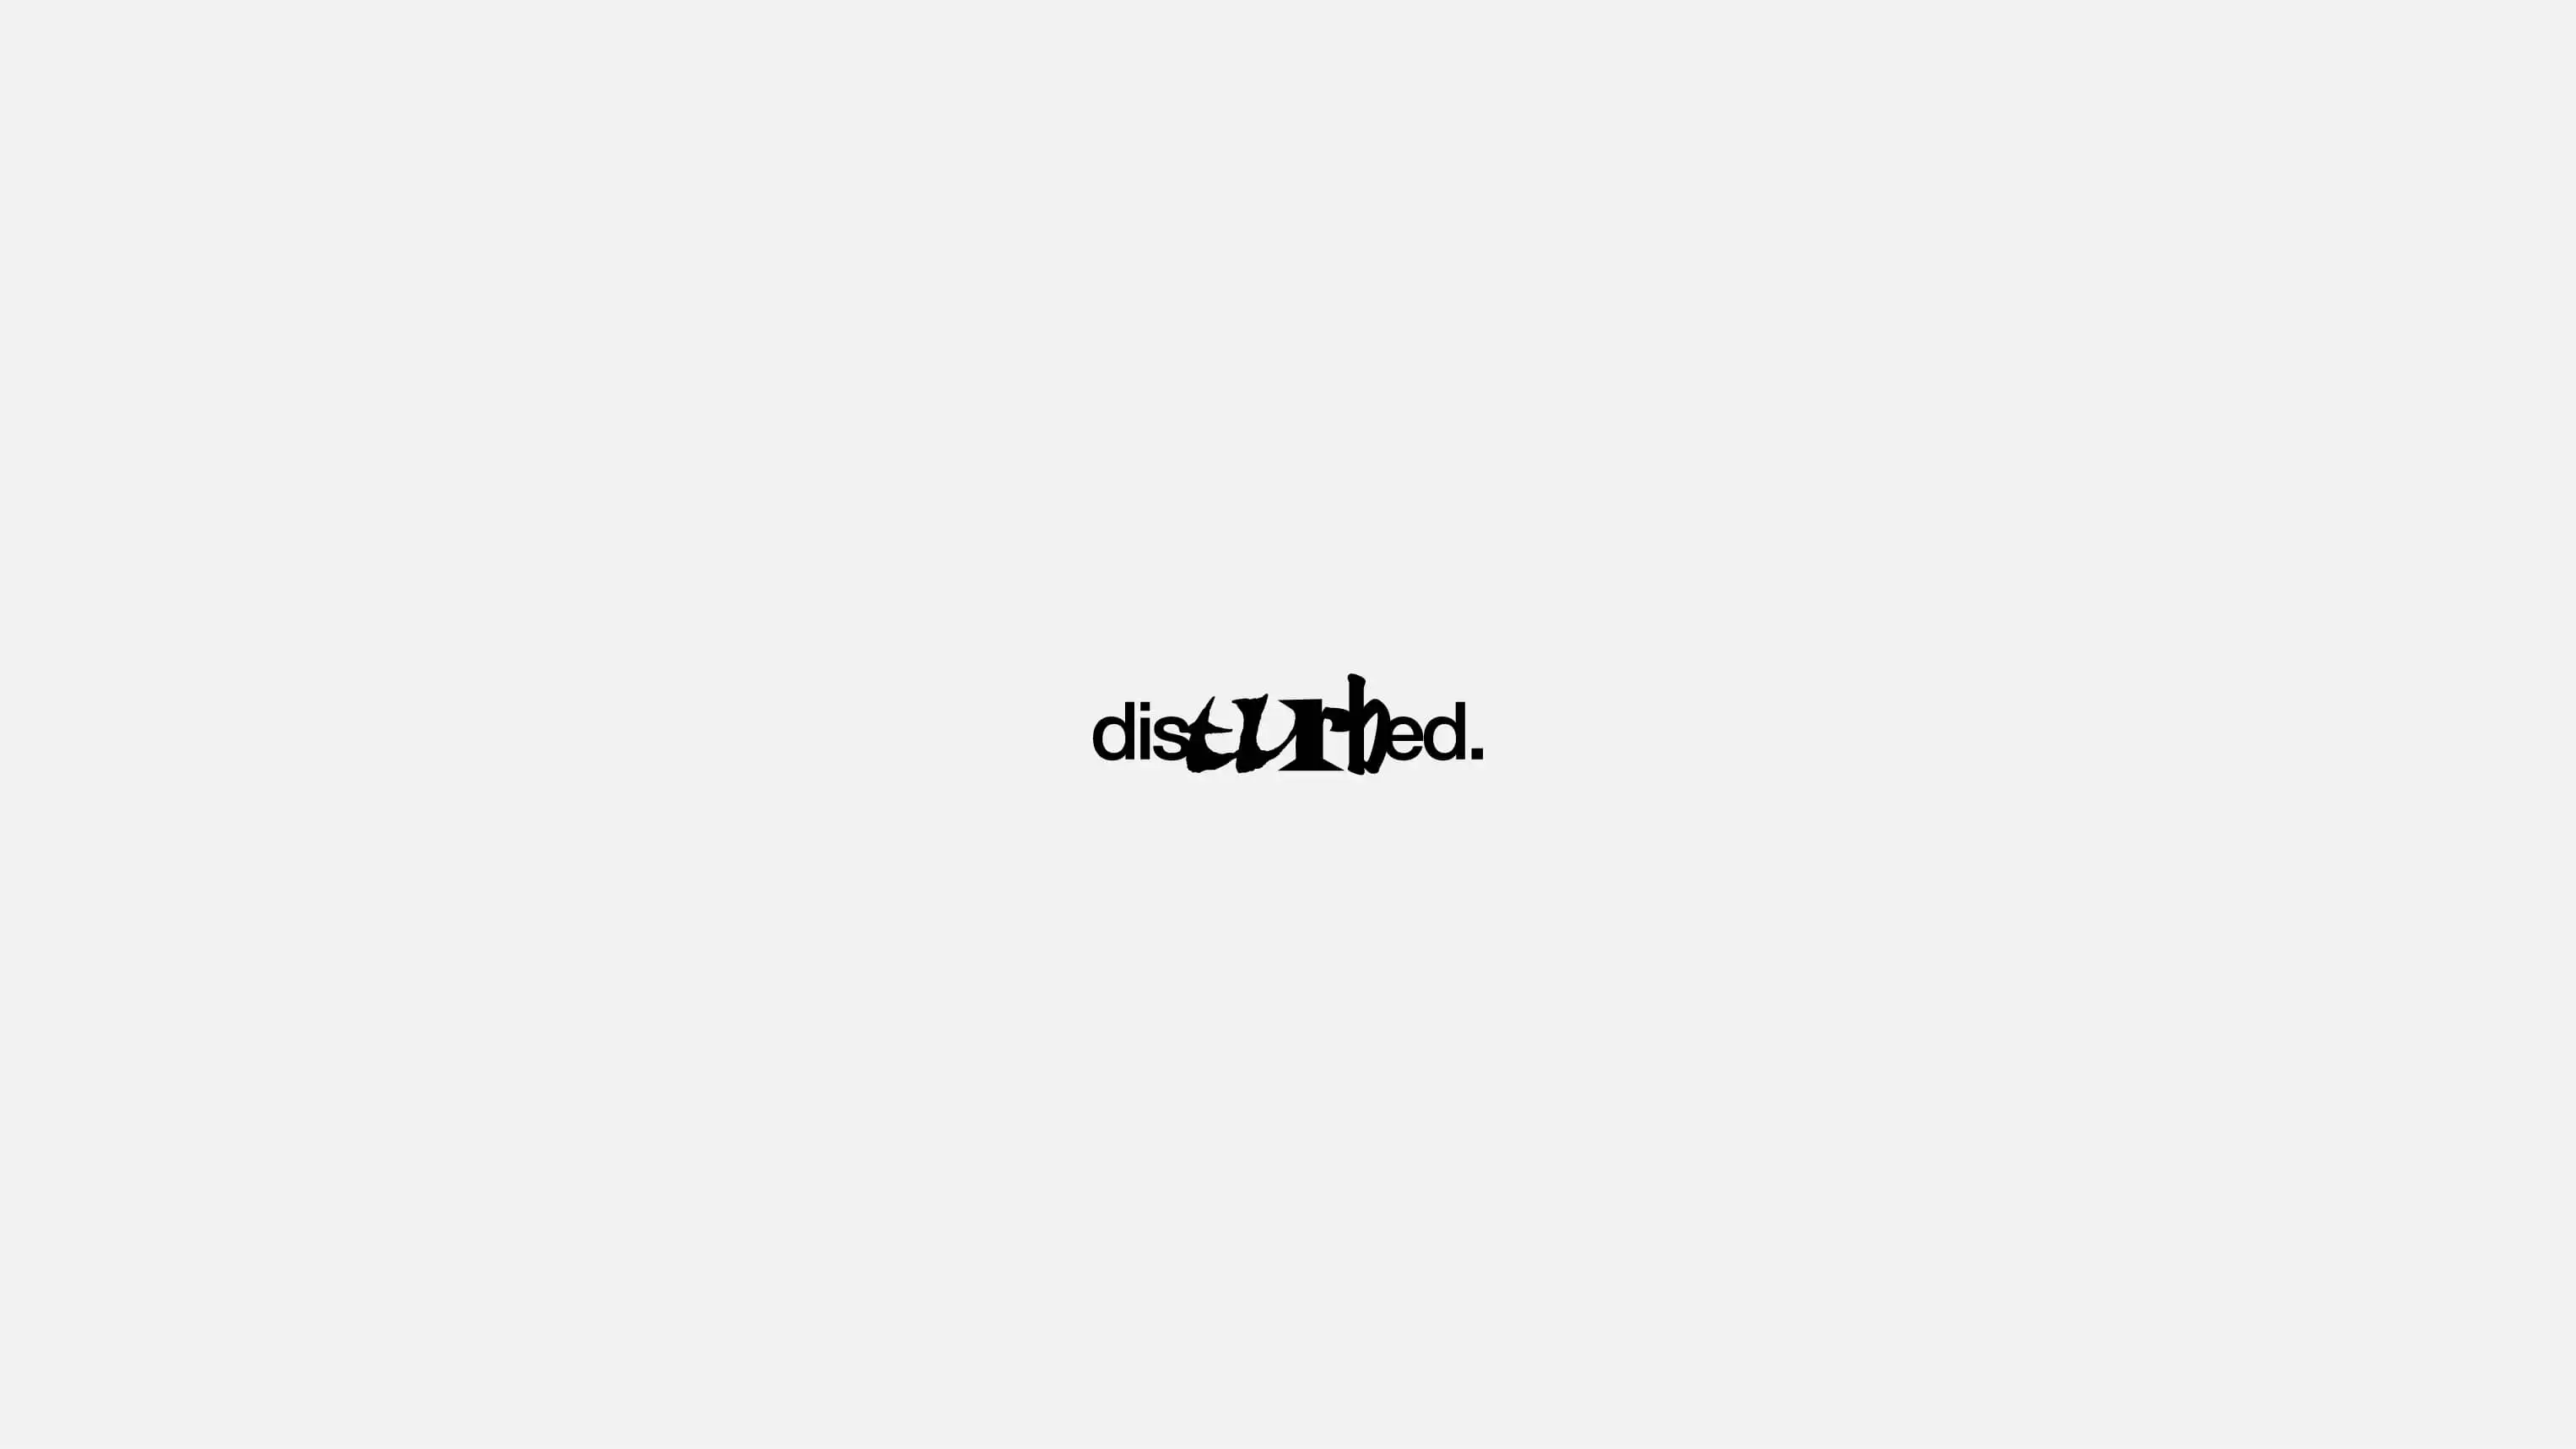 Disturbed's logotype